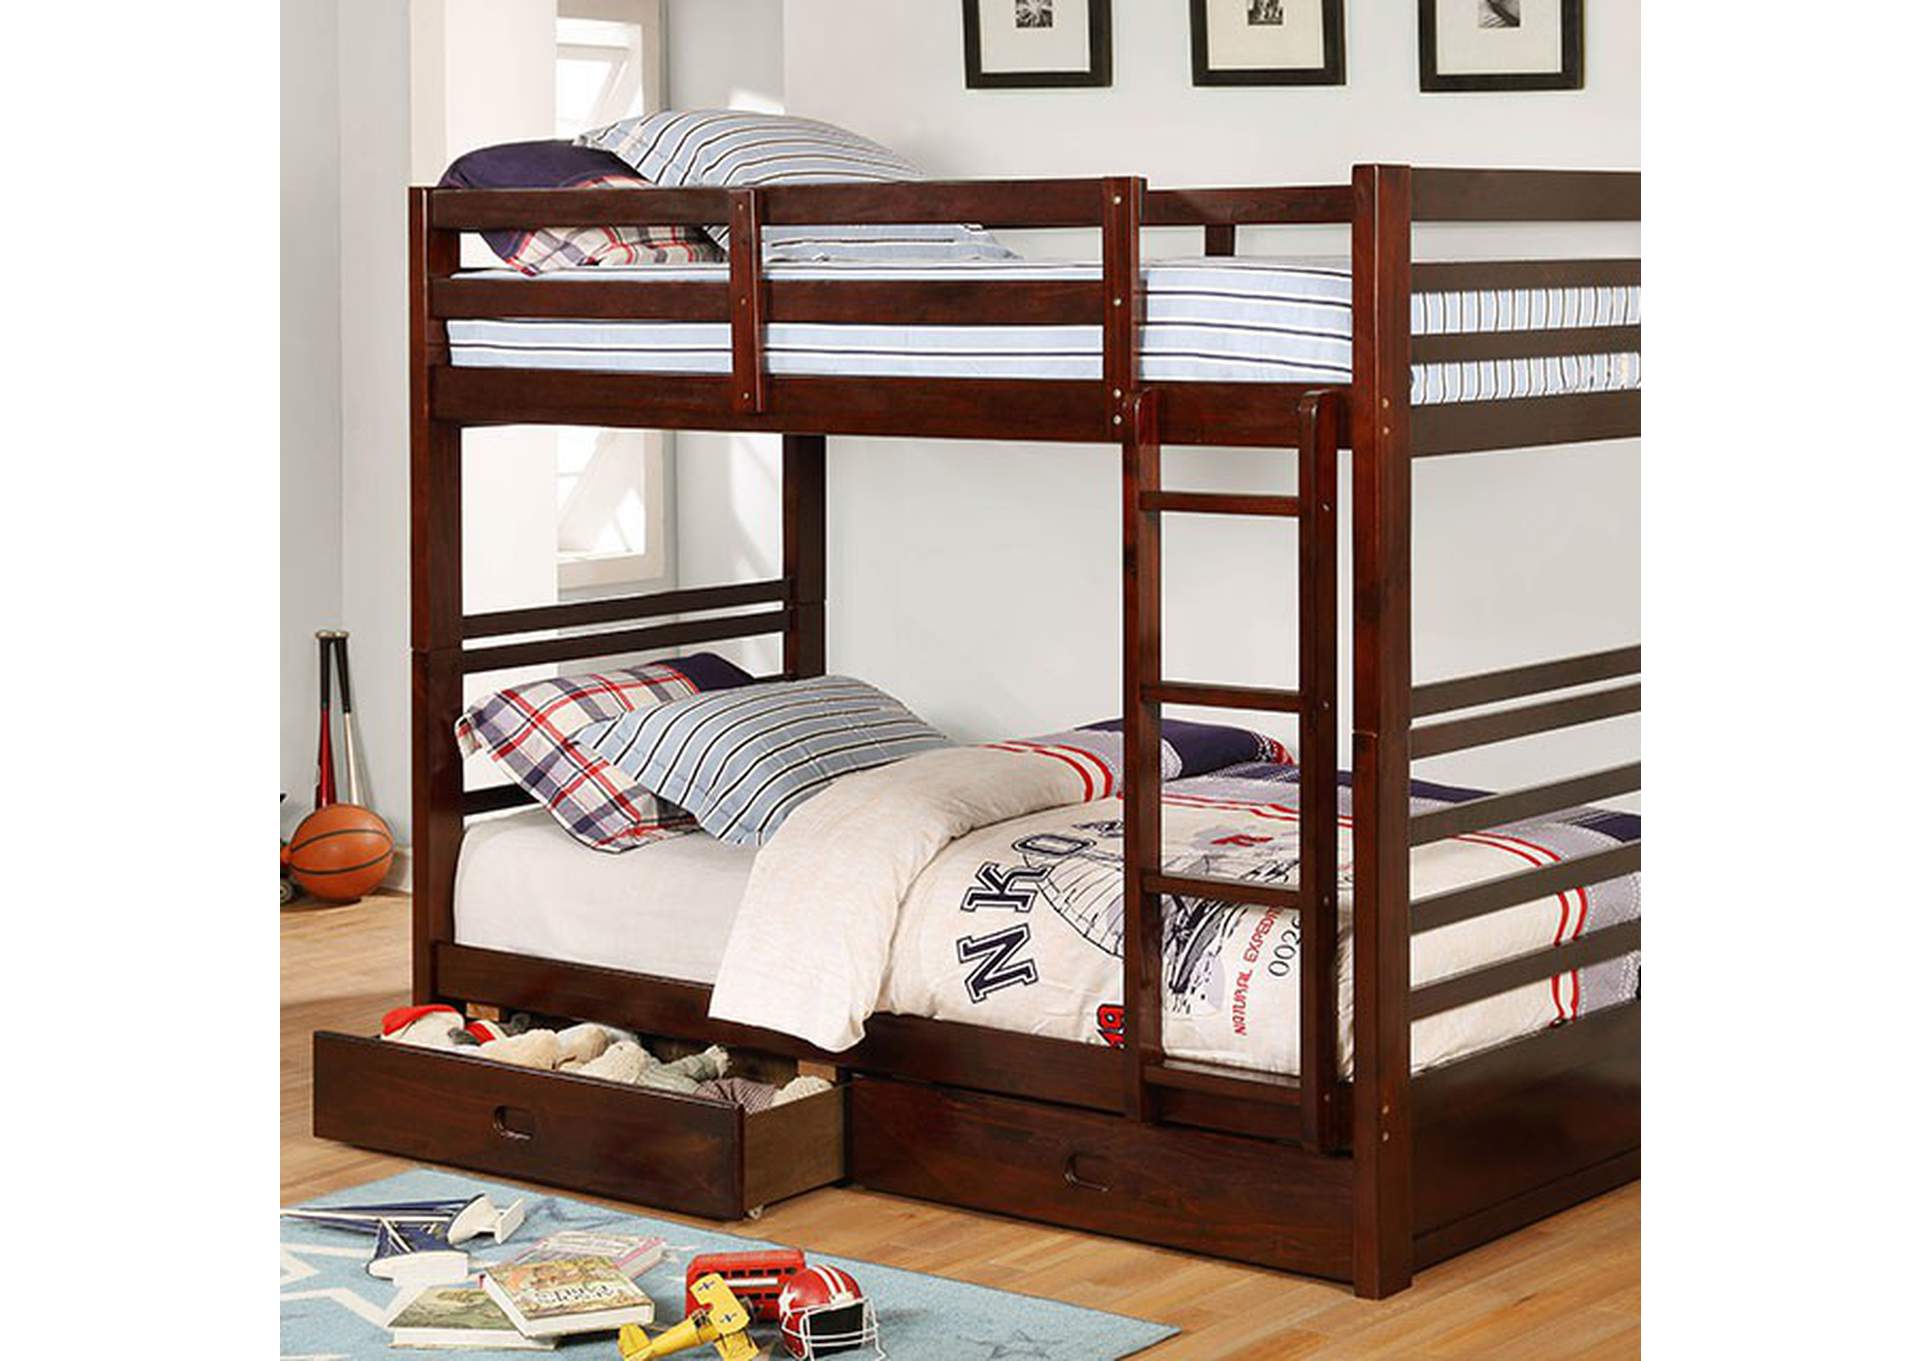 California Twin/Twin Bunk Bed,Furniture of America